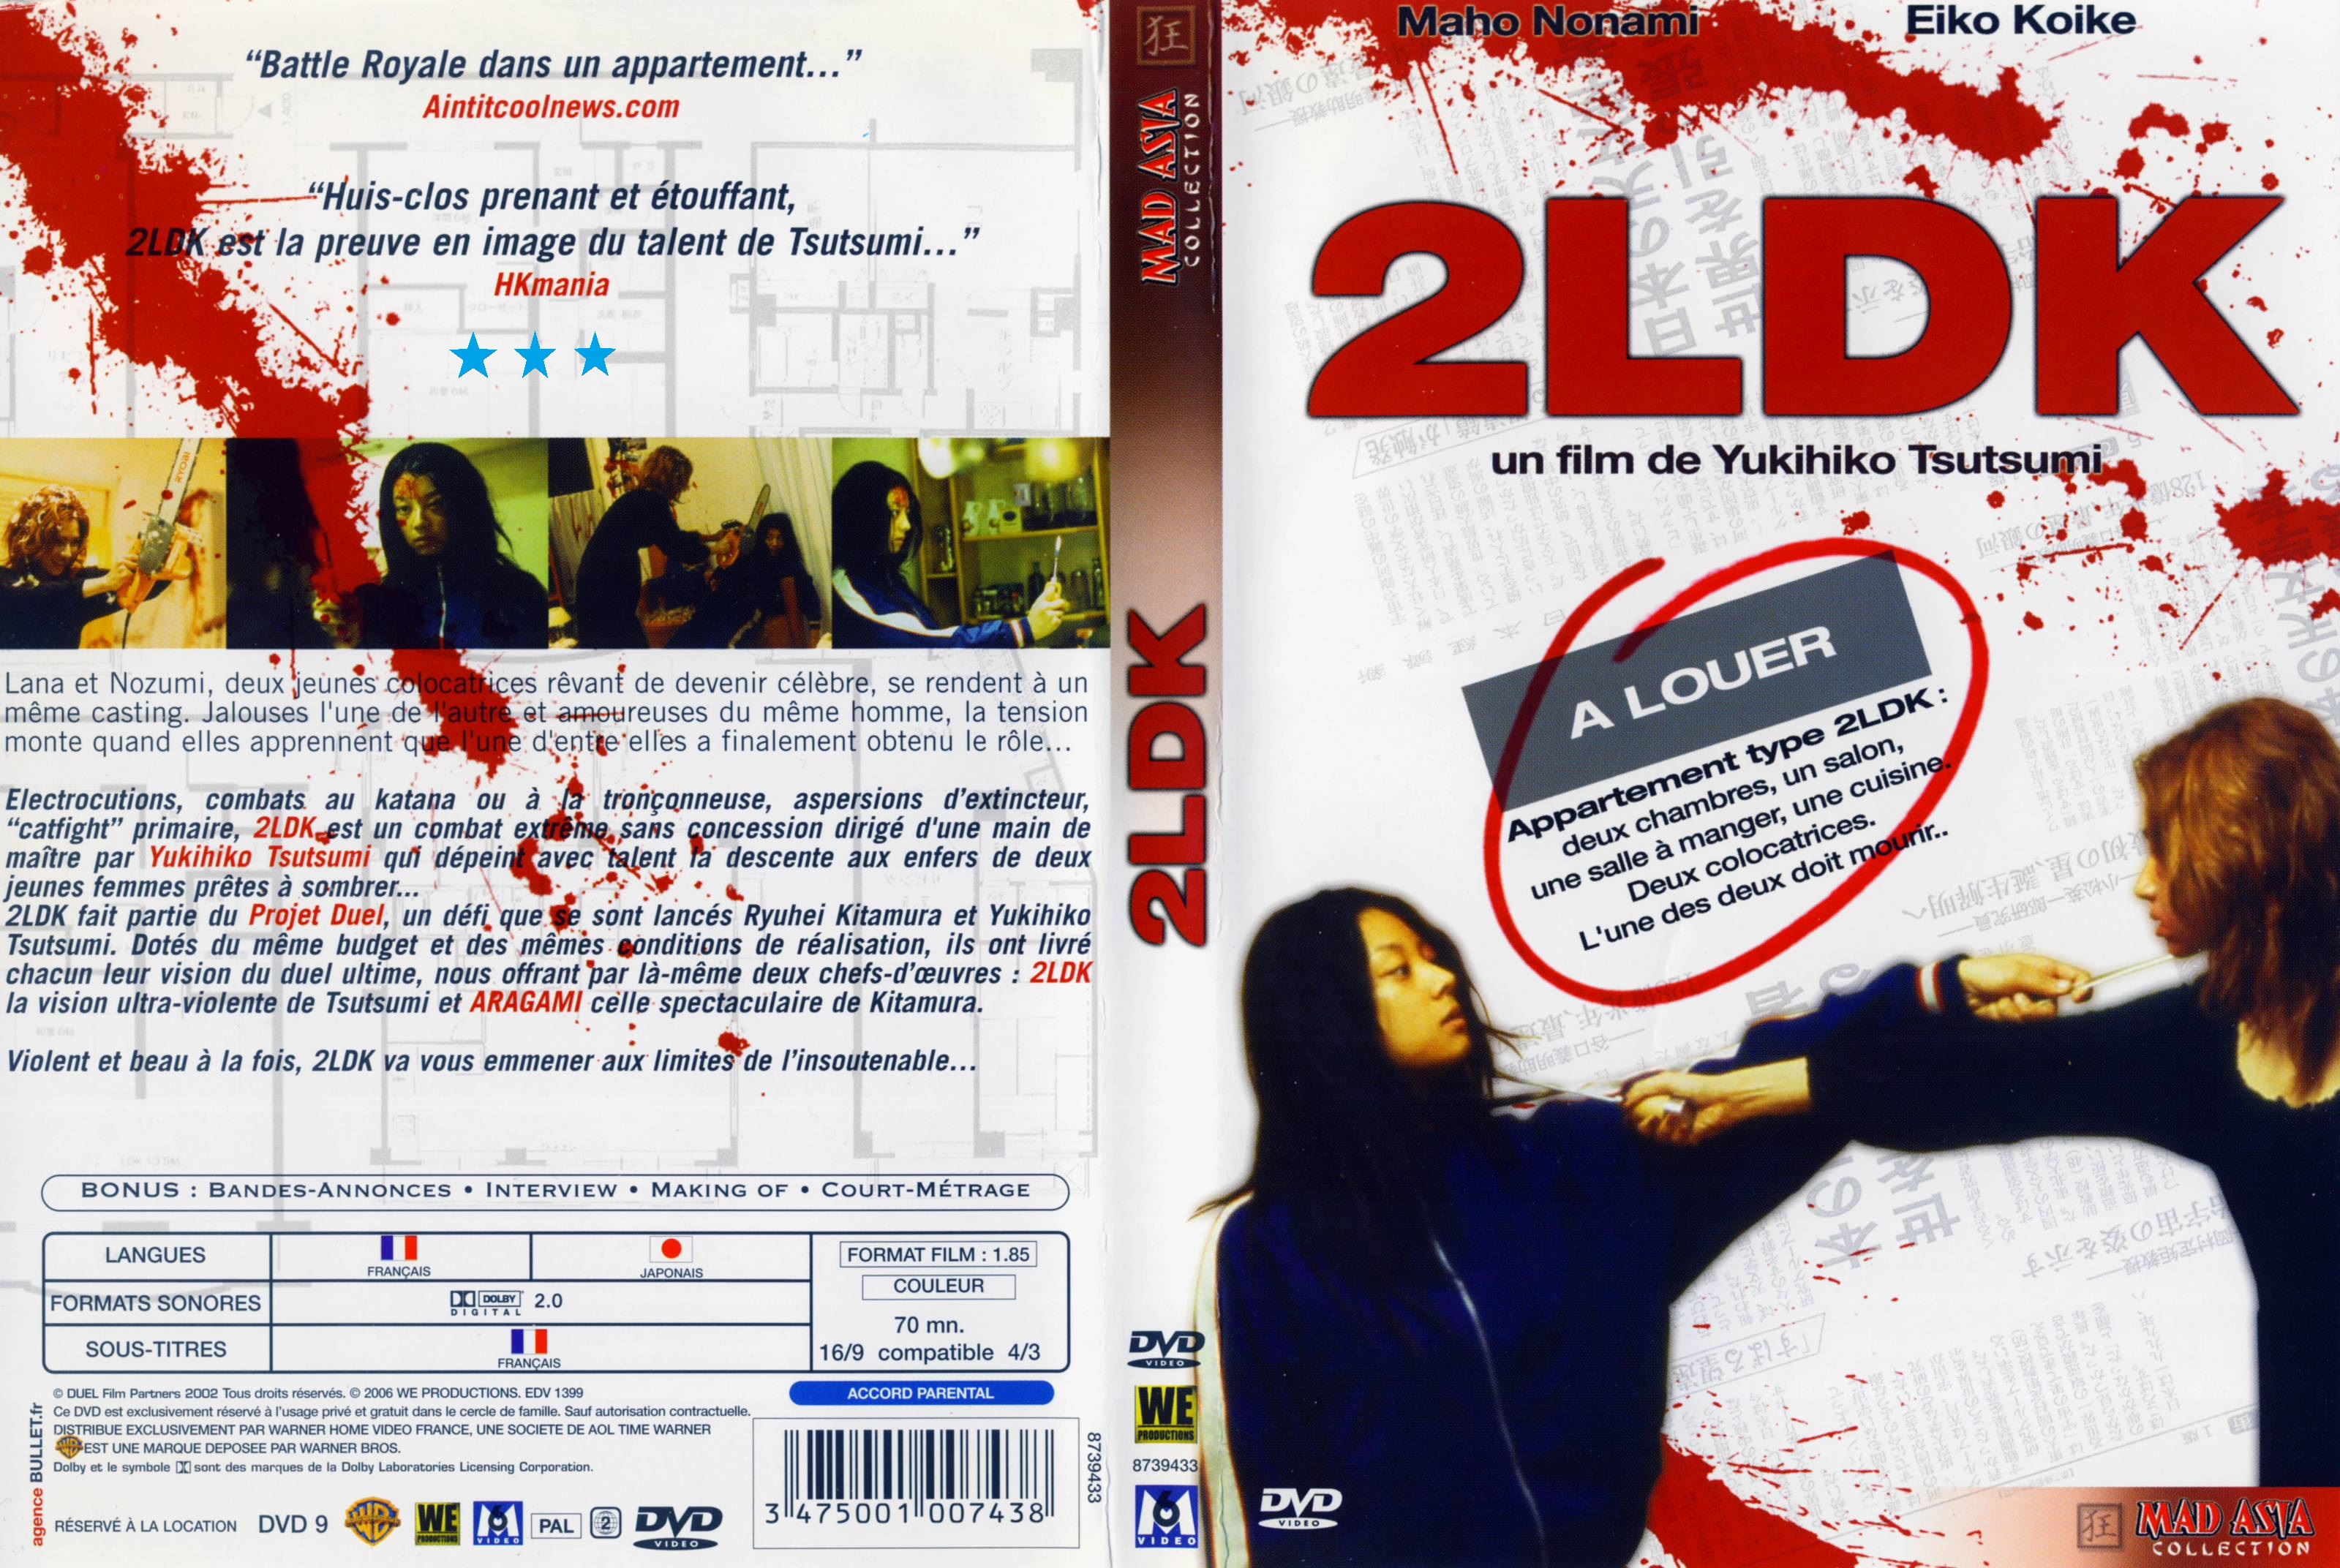 Jaquette DVD 2LDK v3